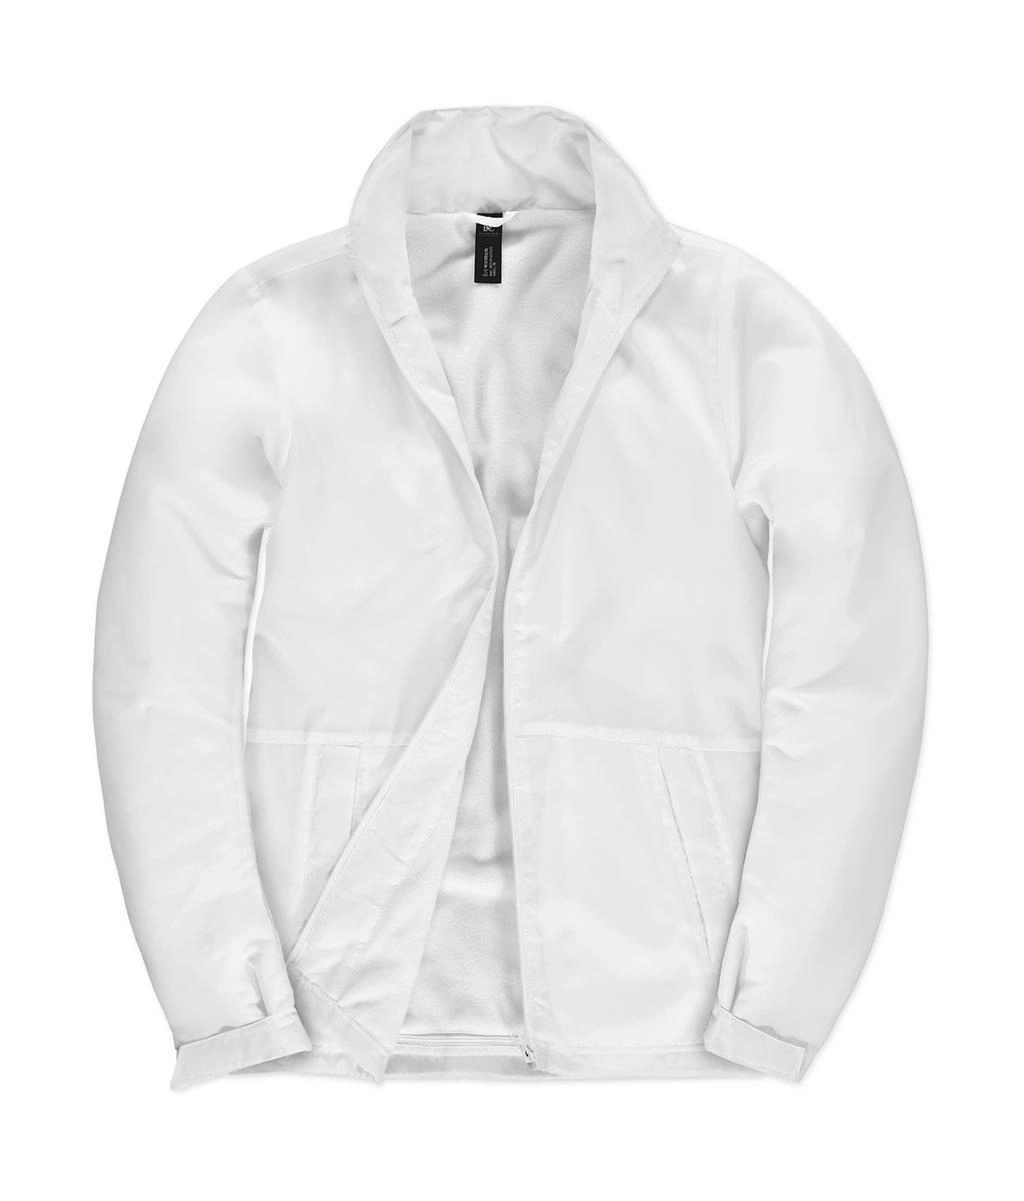 Multi-Active/women Jacket zum Besticken und Bedrucken in der Farbe White/White mit Ihren Logo, Schriftzug oder Motiv.